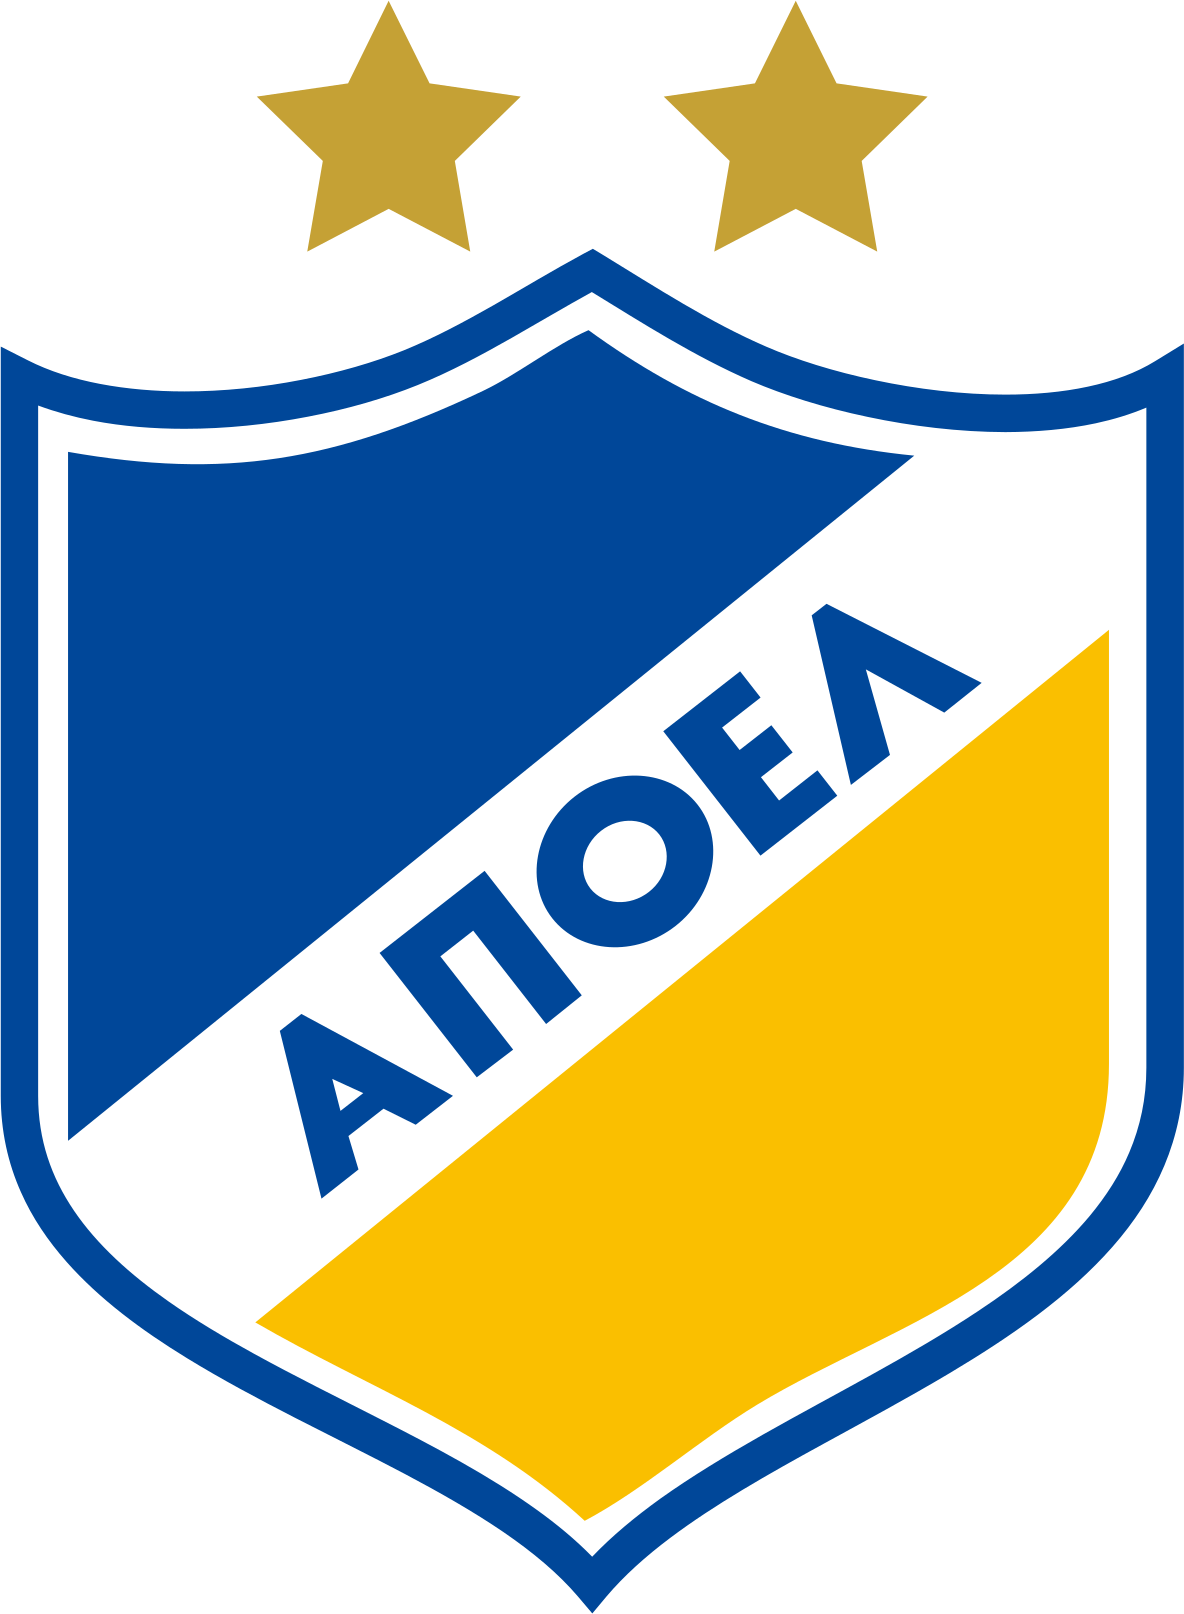 Apoel FC